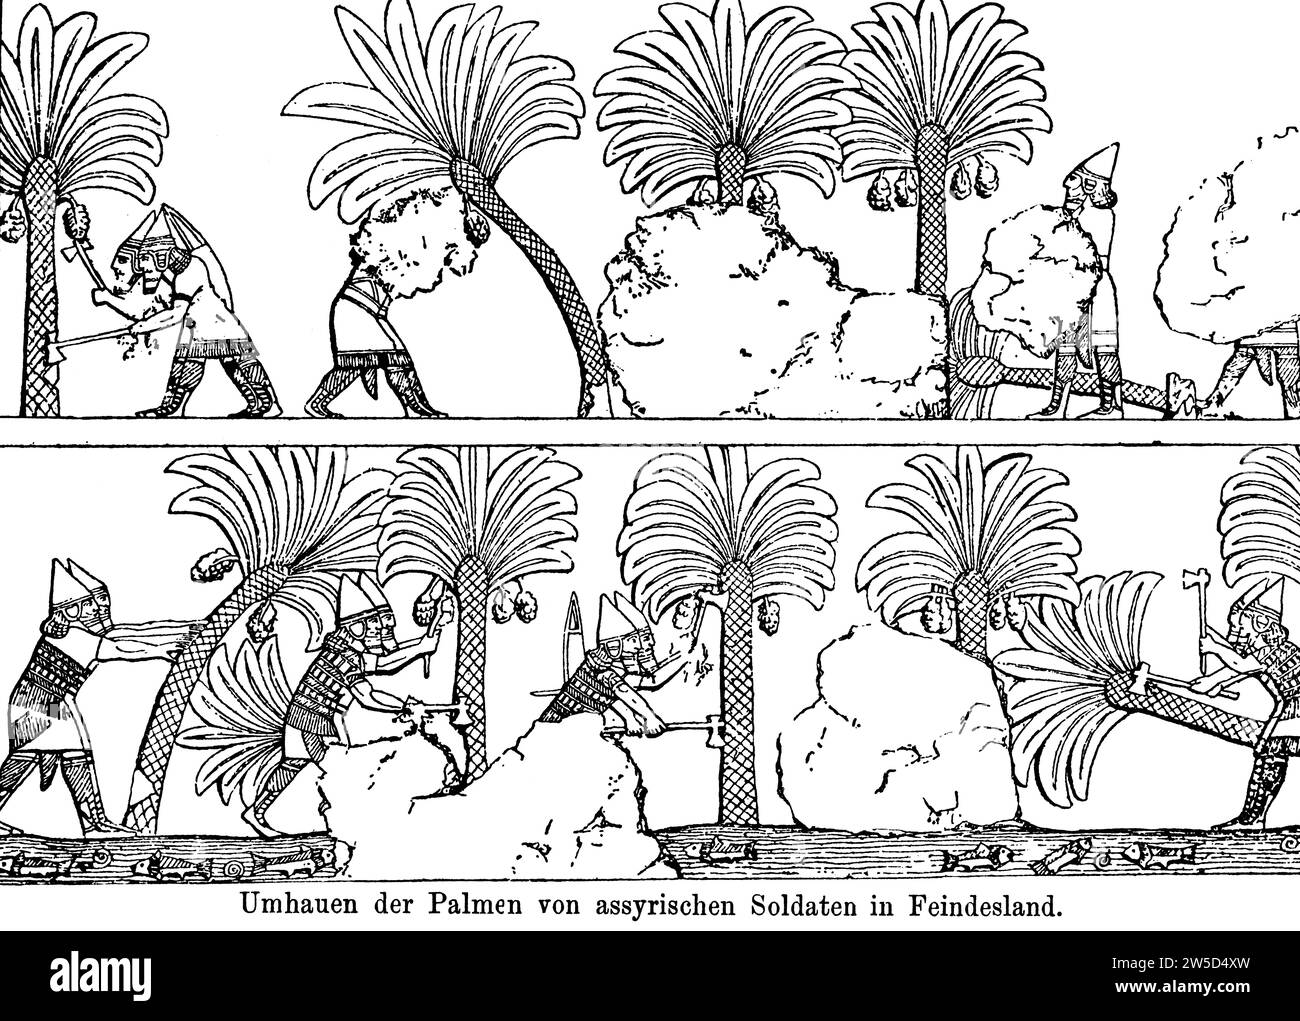 Couper des palmiers par des soldats assyriens en territoire ennemi, couper un arbre, fruit, date plamen, date, nourriture, plante utile, victor Banque D'Images